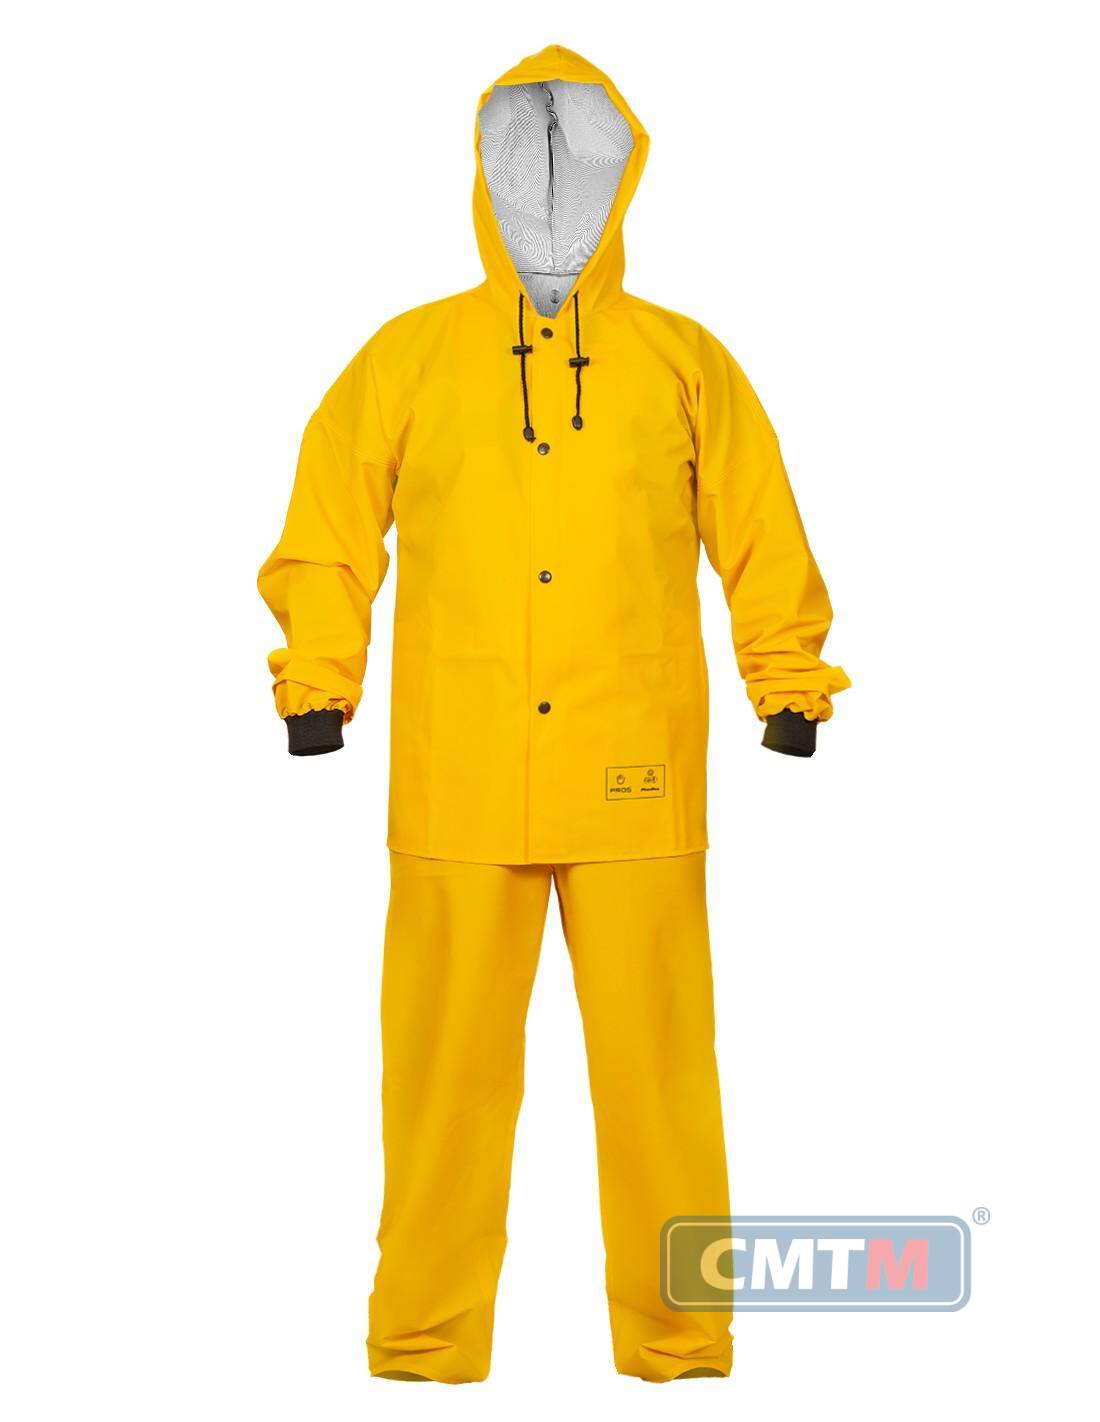 Ubranie wodoochronne AJ 101/001 żółte, rozmiar 54 L